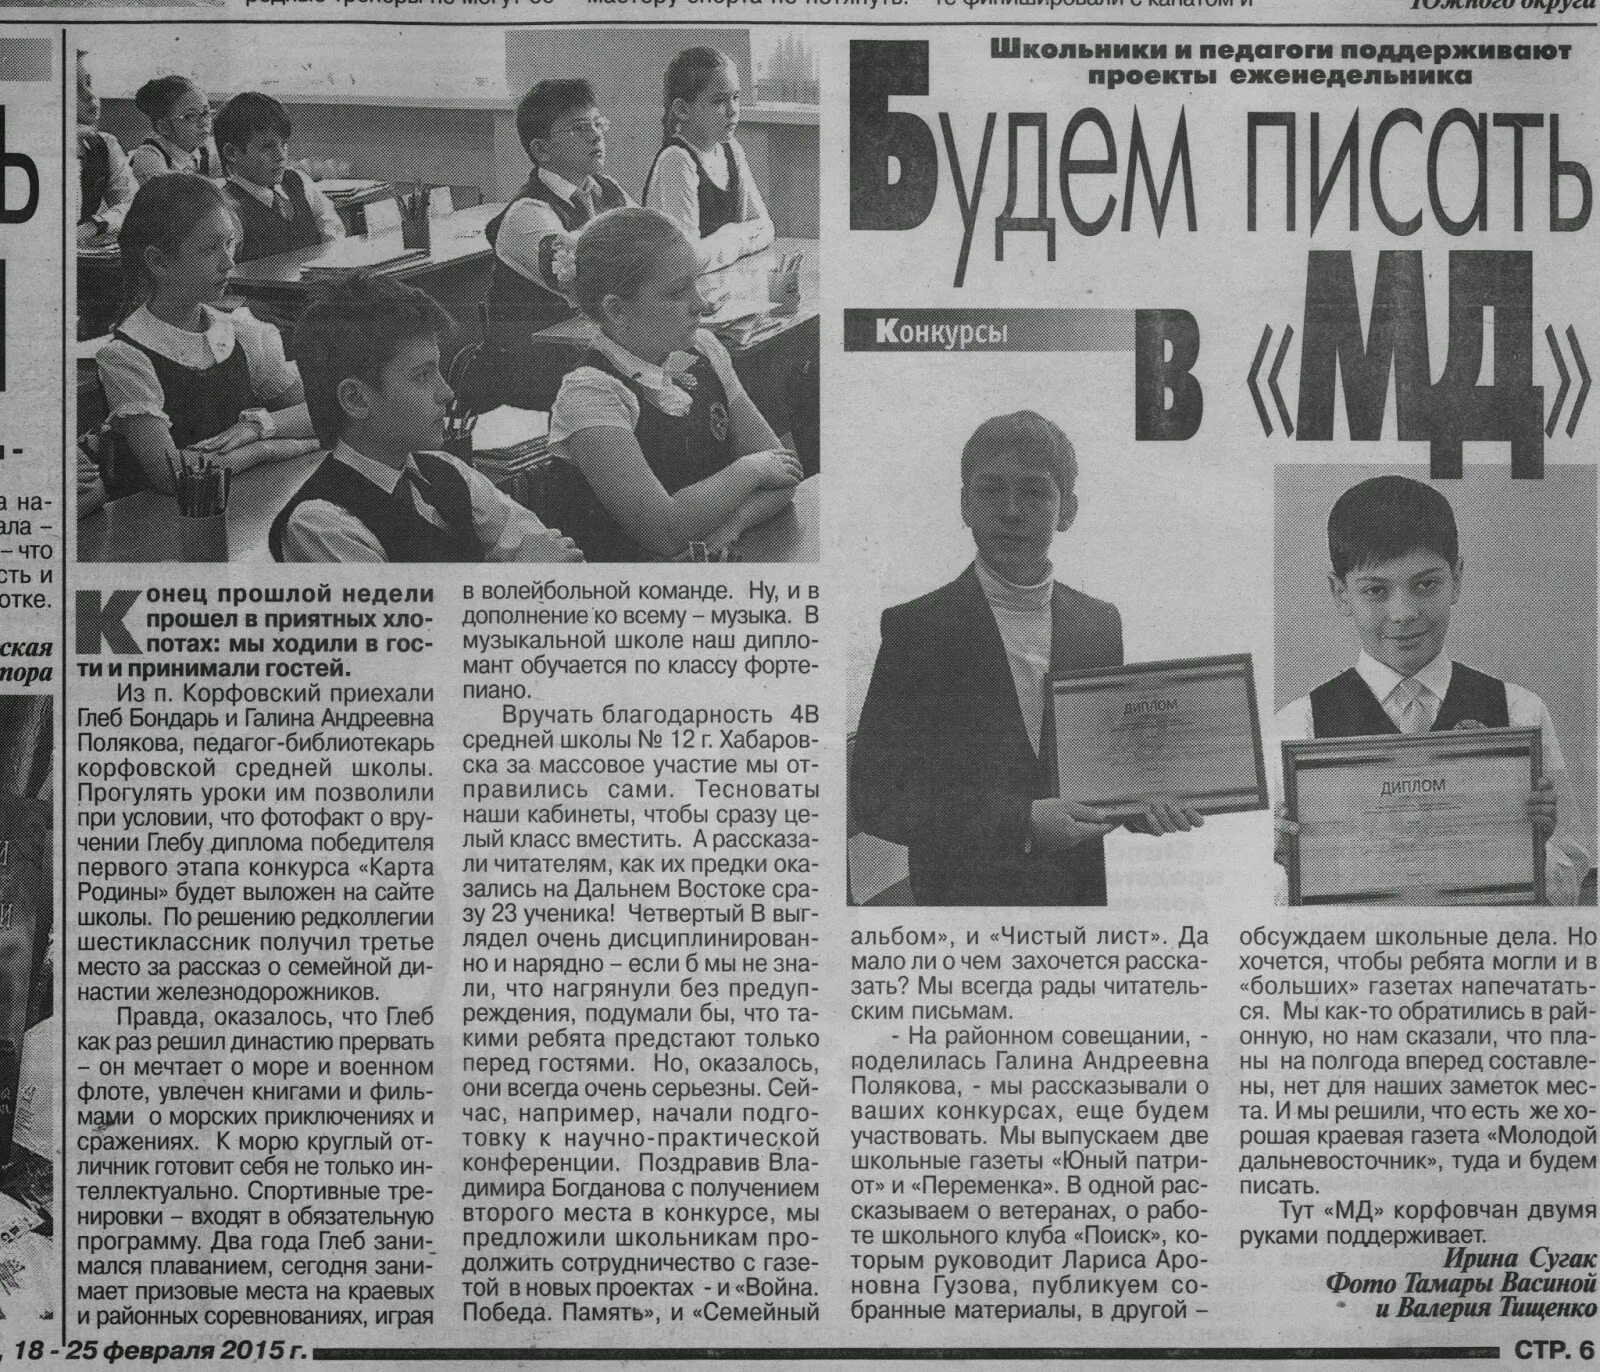 Корейская газета. Газета я молодой. Узбекские газеты для молодежи. Фотофакт в газете. Конкурсы газет